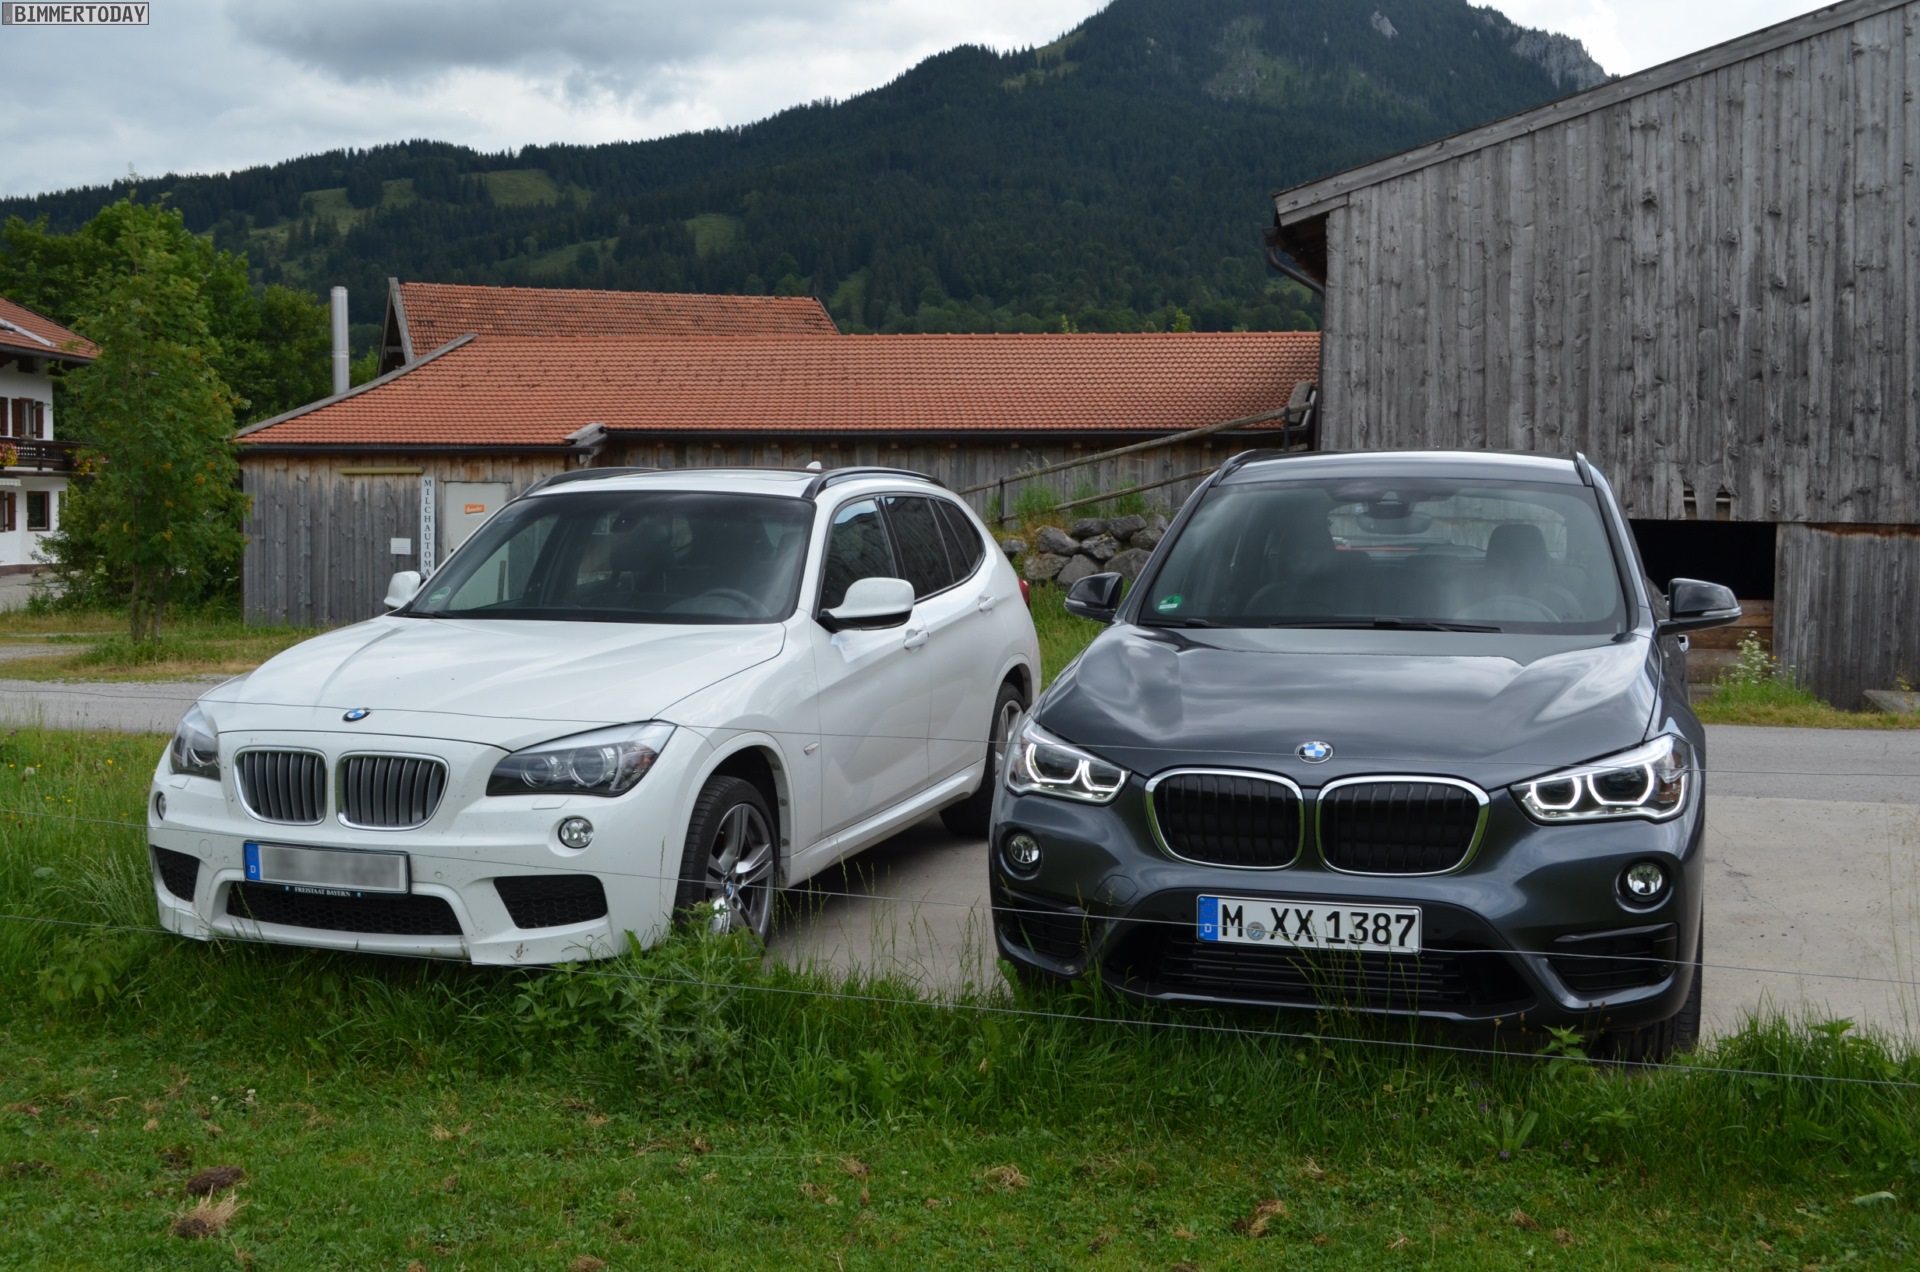 2016 BMW X1 (F48) compared with 2012 BMW X1 (E84)